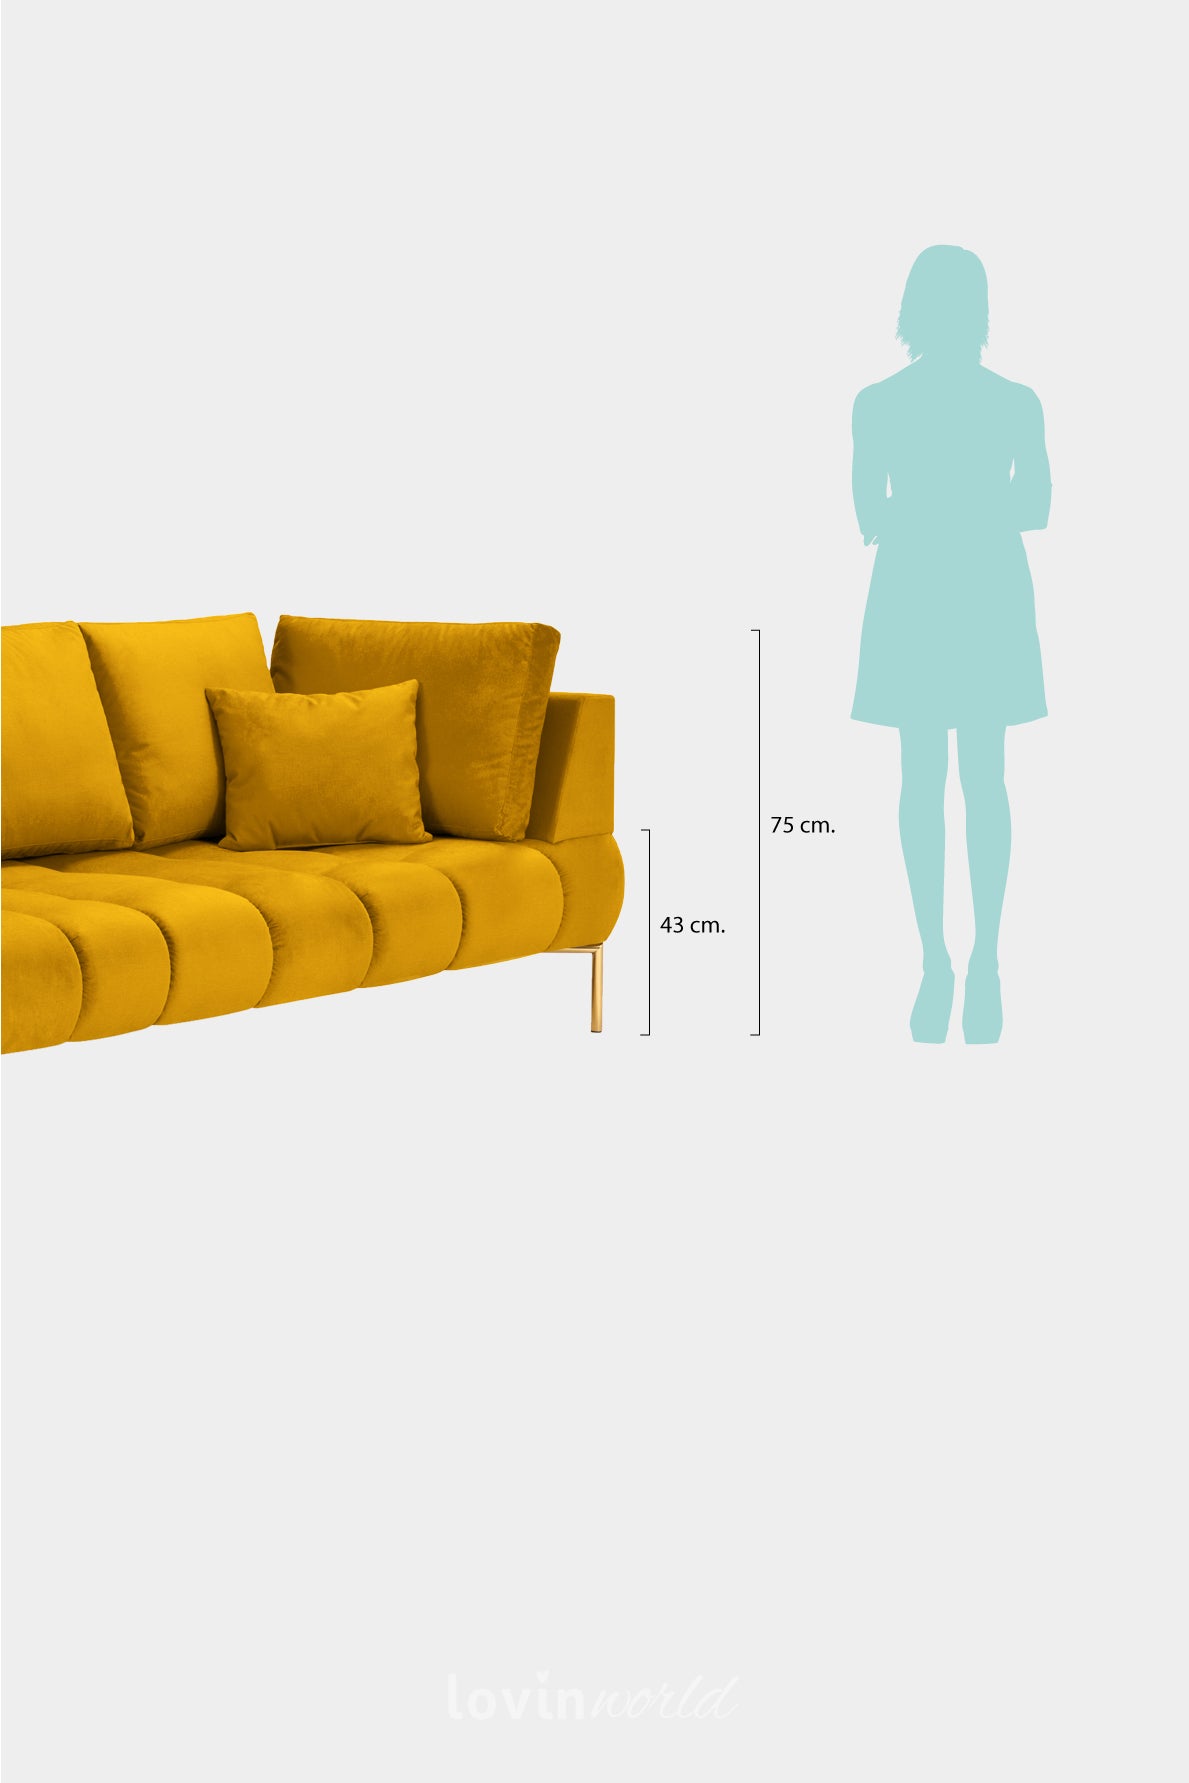 Chaise longue Malvin, in velluto giallo con gambe dorate-LovinWorld